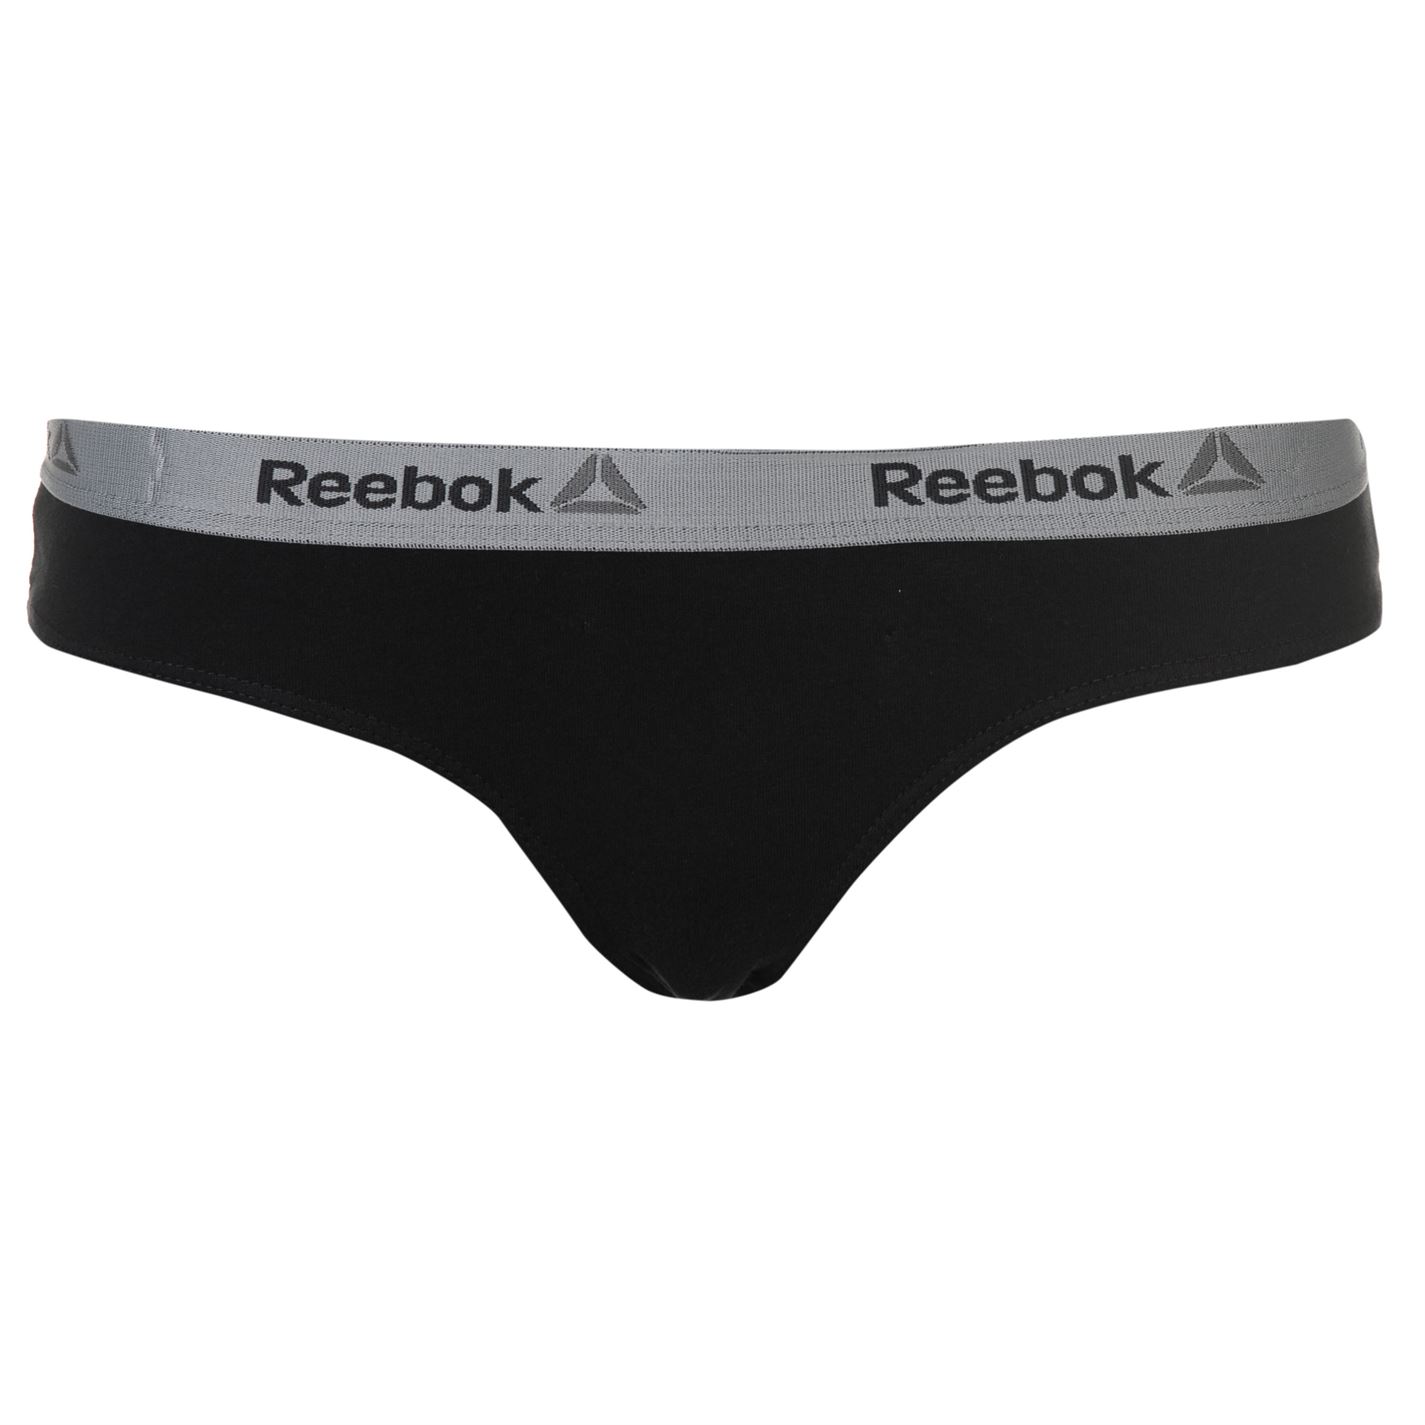 reebok women's underwear